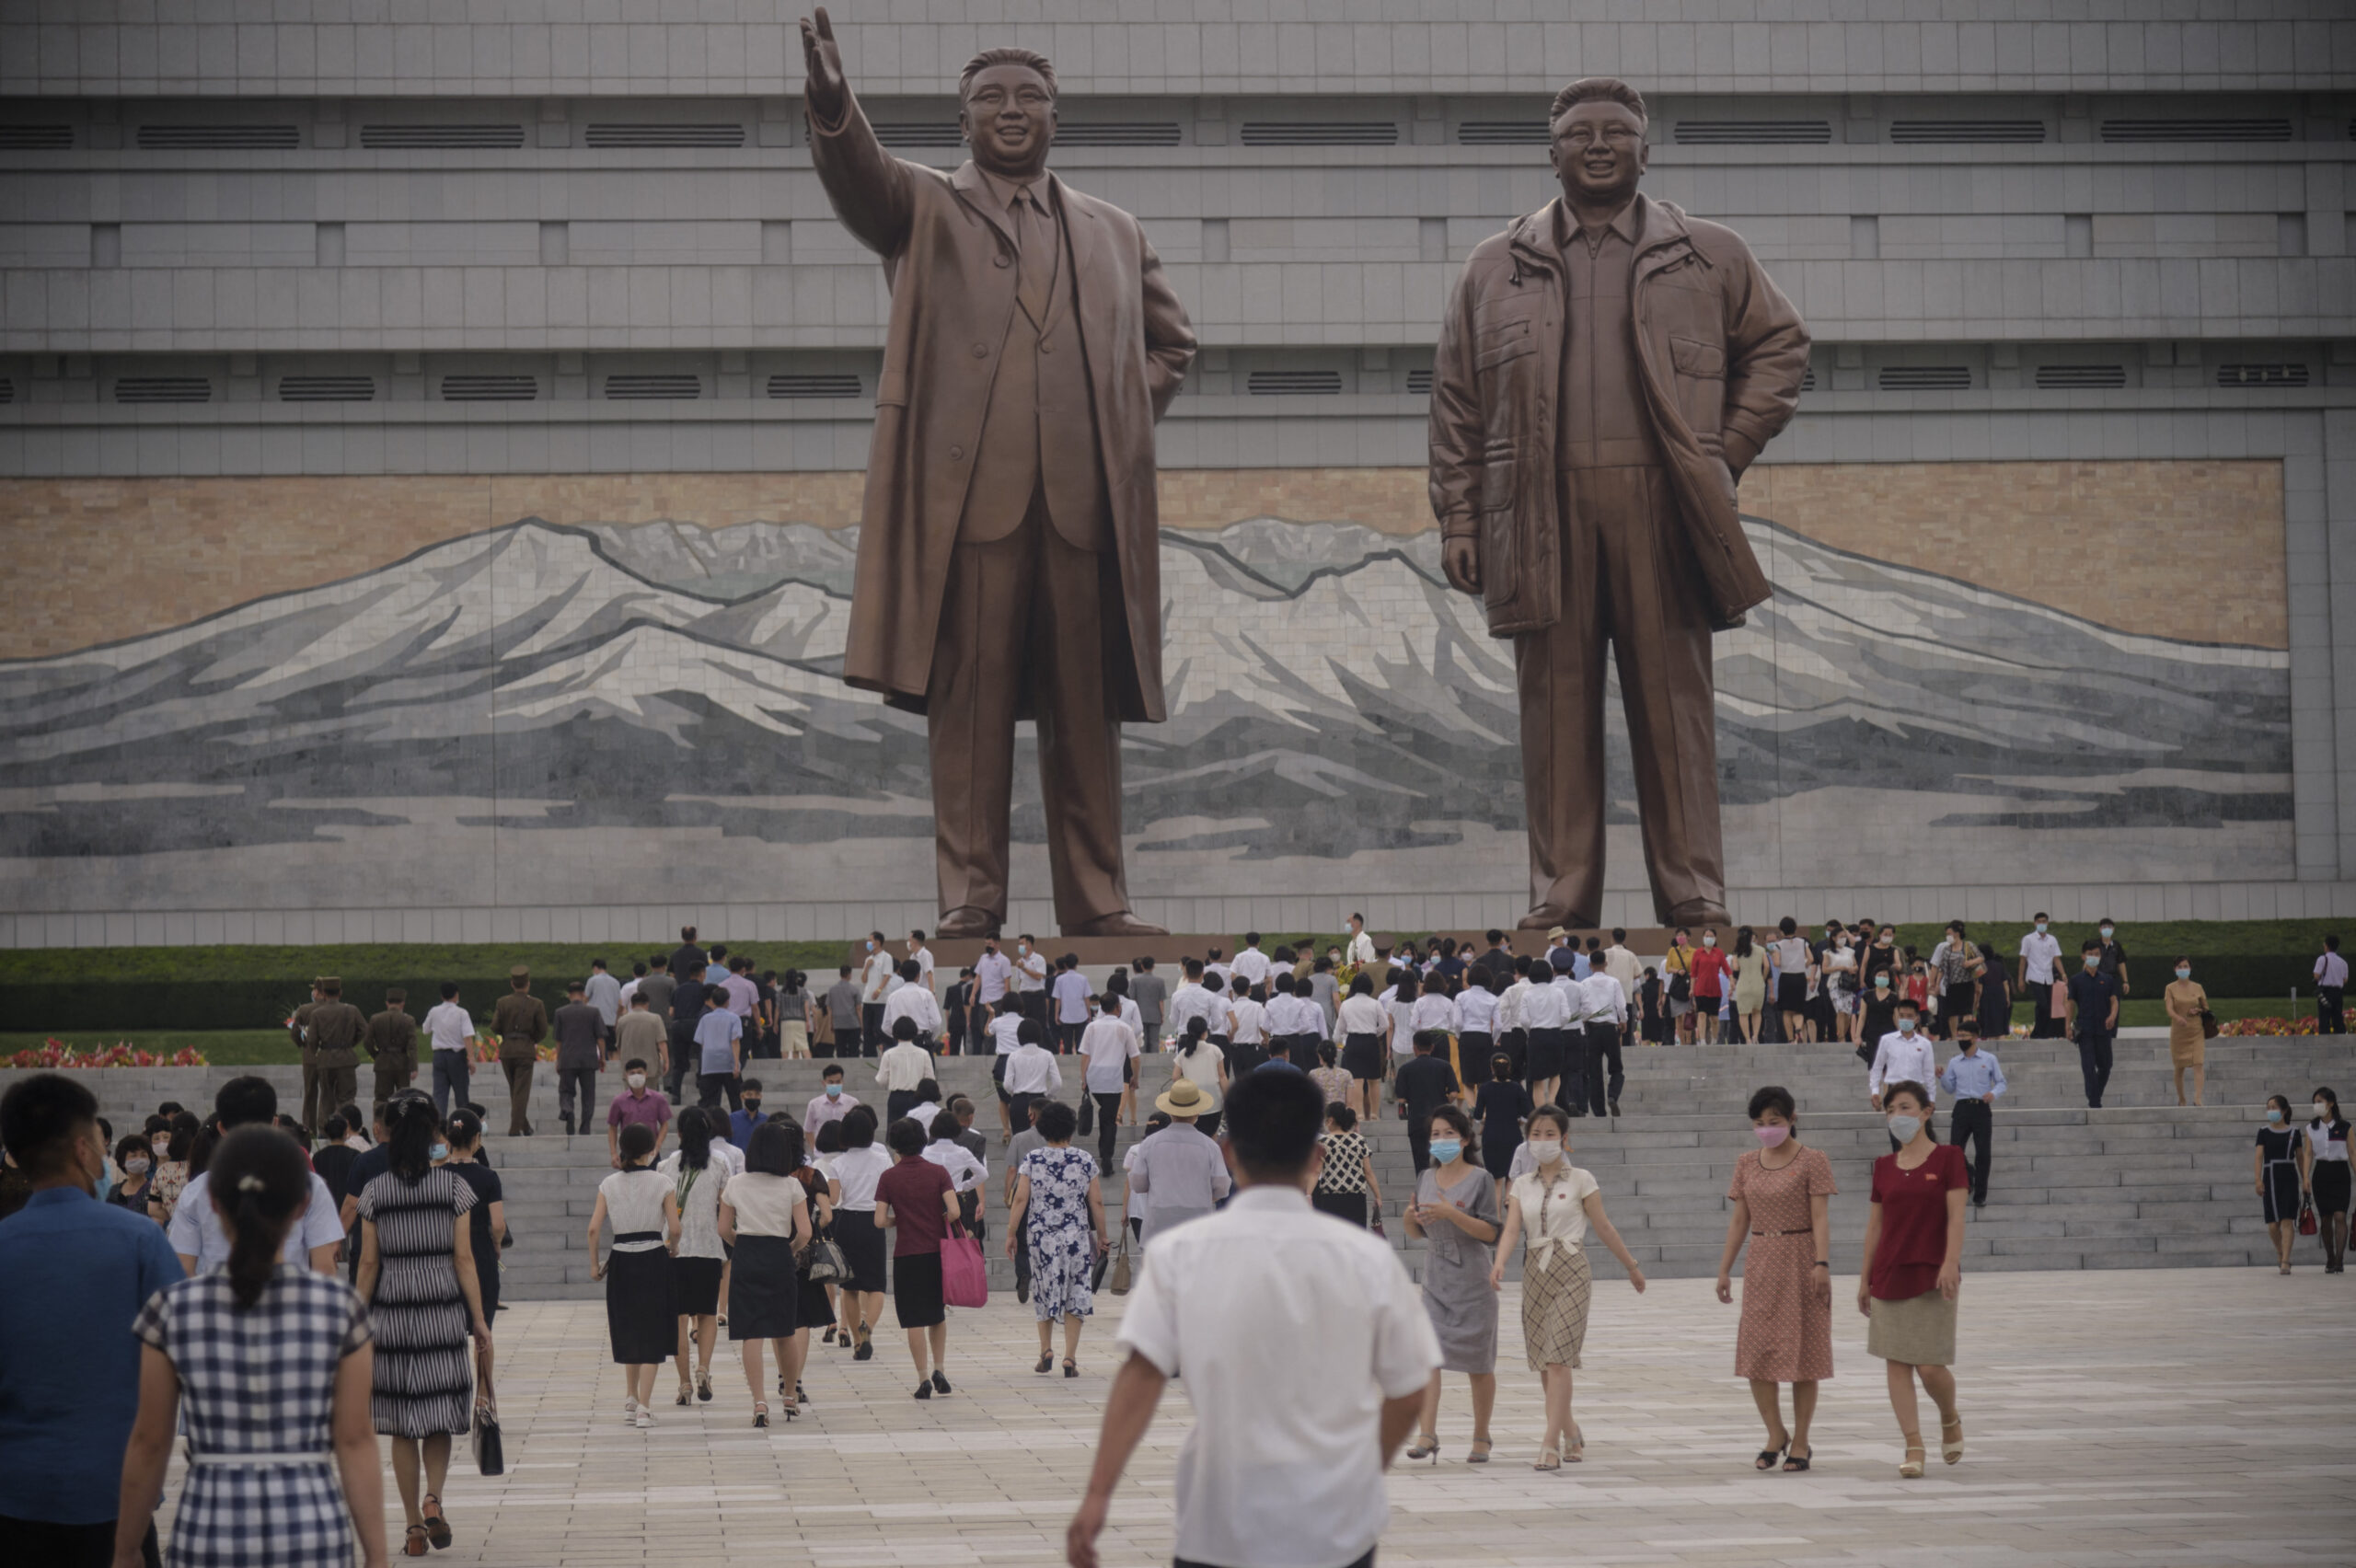 เกาหลีเหนือ ห้ามคนรุ่นใหม่พูดศัพท์สแลง “อปป้า” ของเกาหลีใต้ – ต่างประเทศ